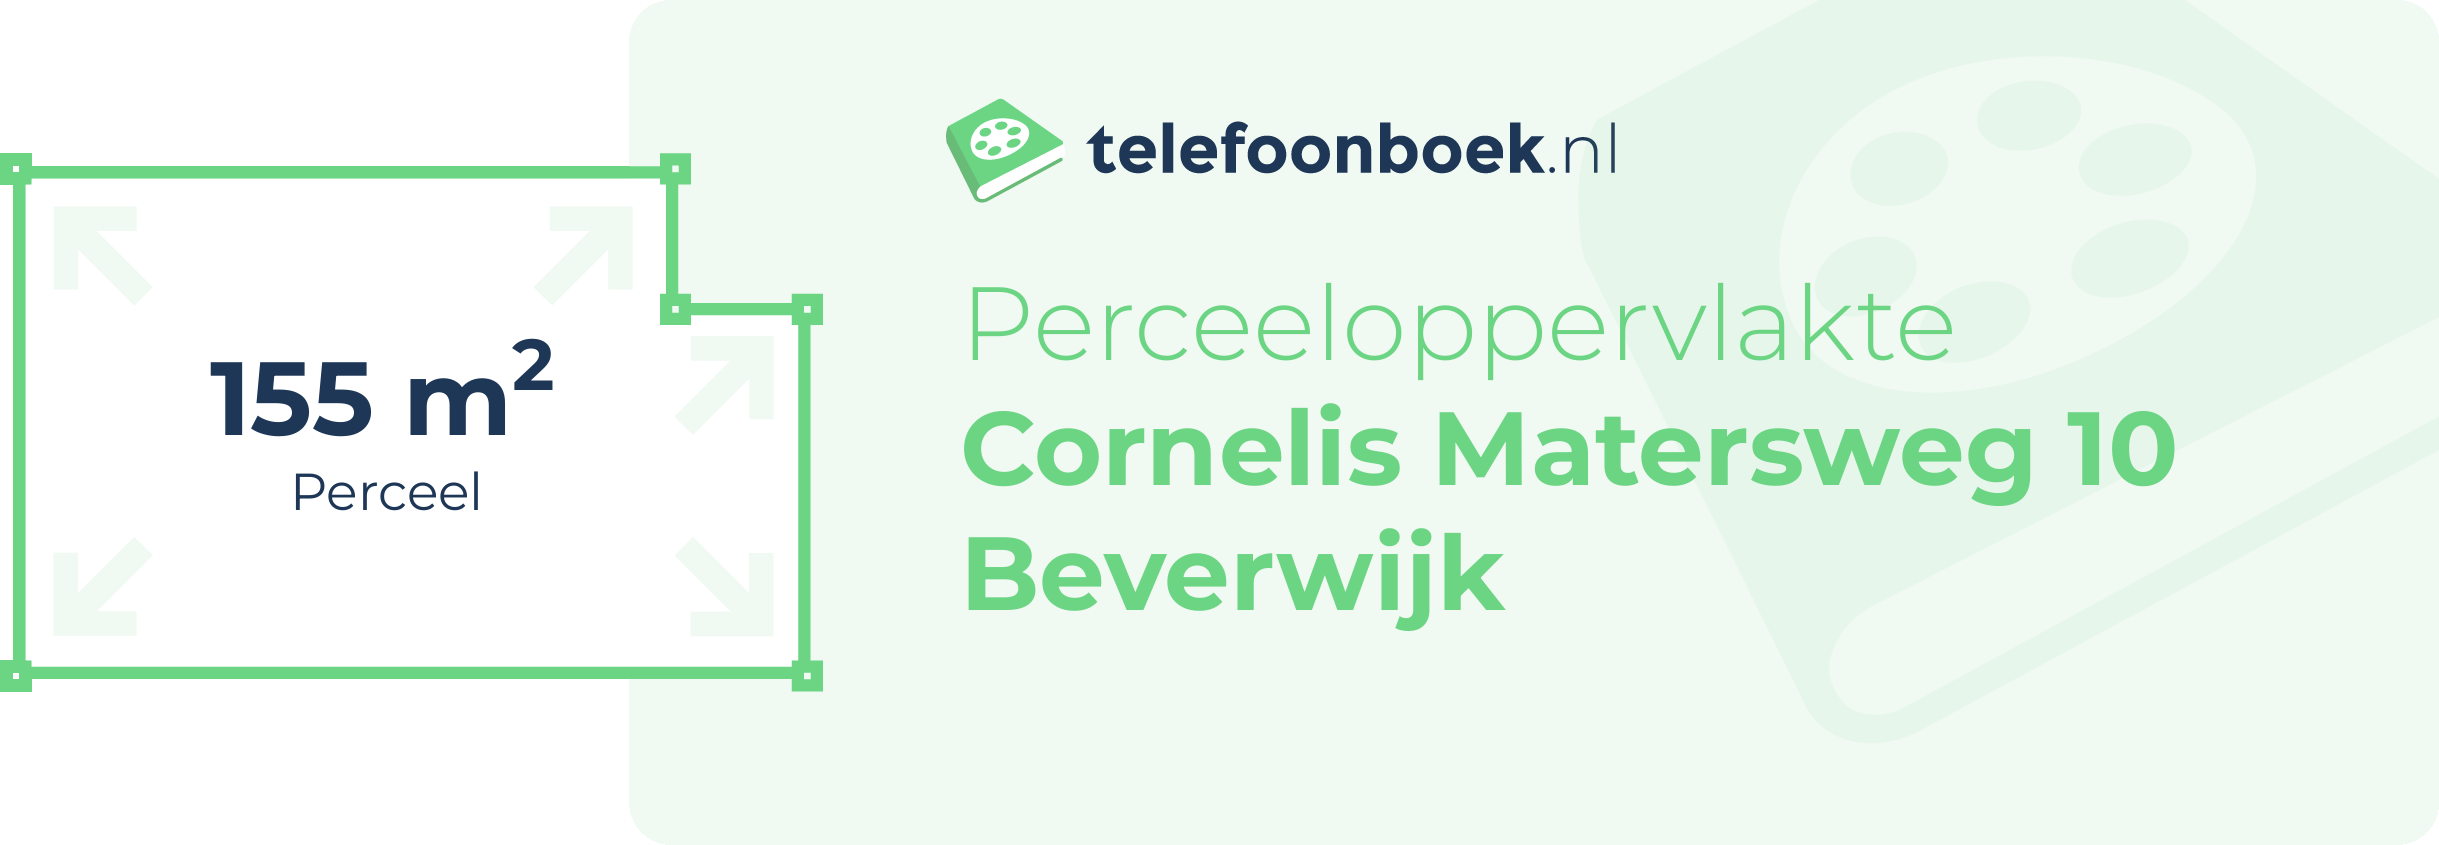 Perceeloppervlakte Cornelis Matersweg 10 Beverwijk